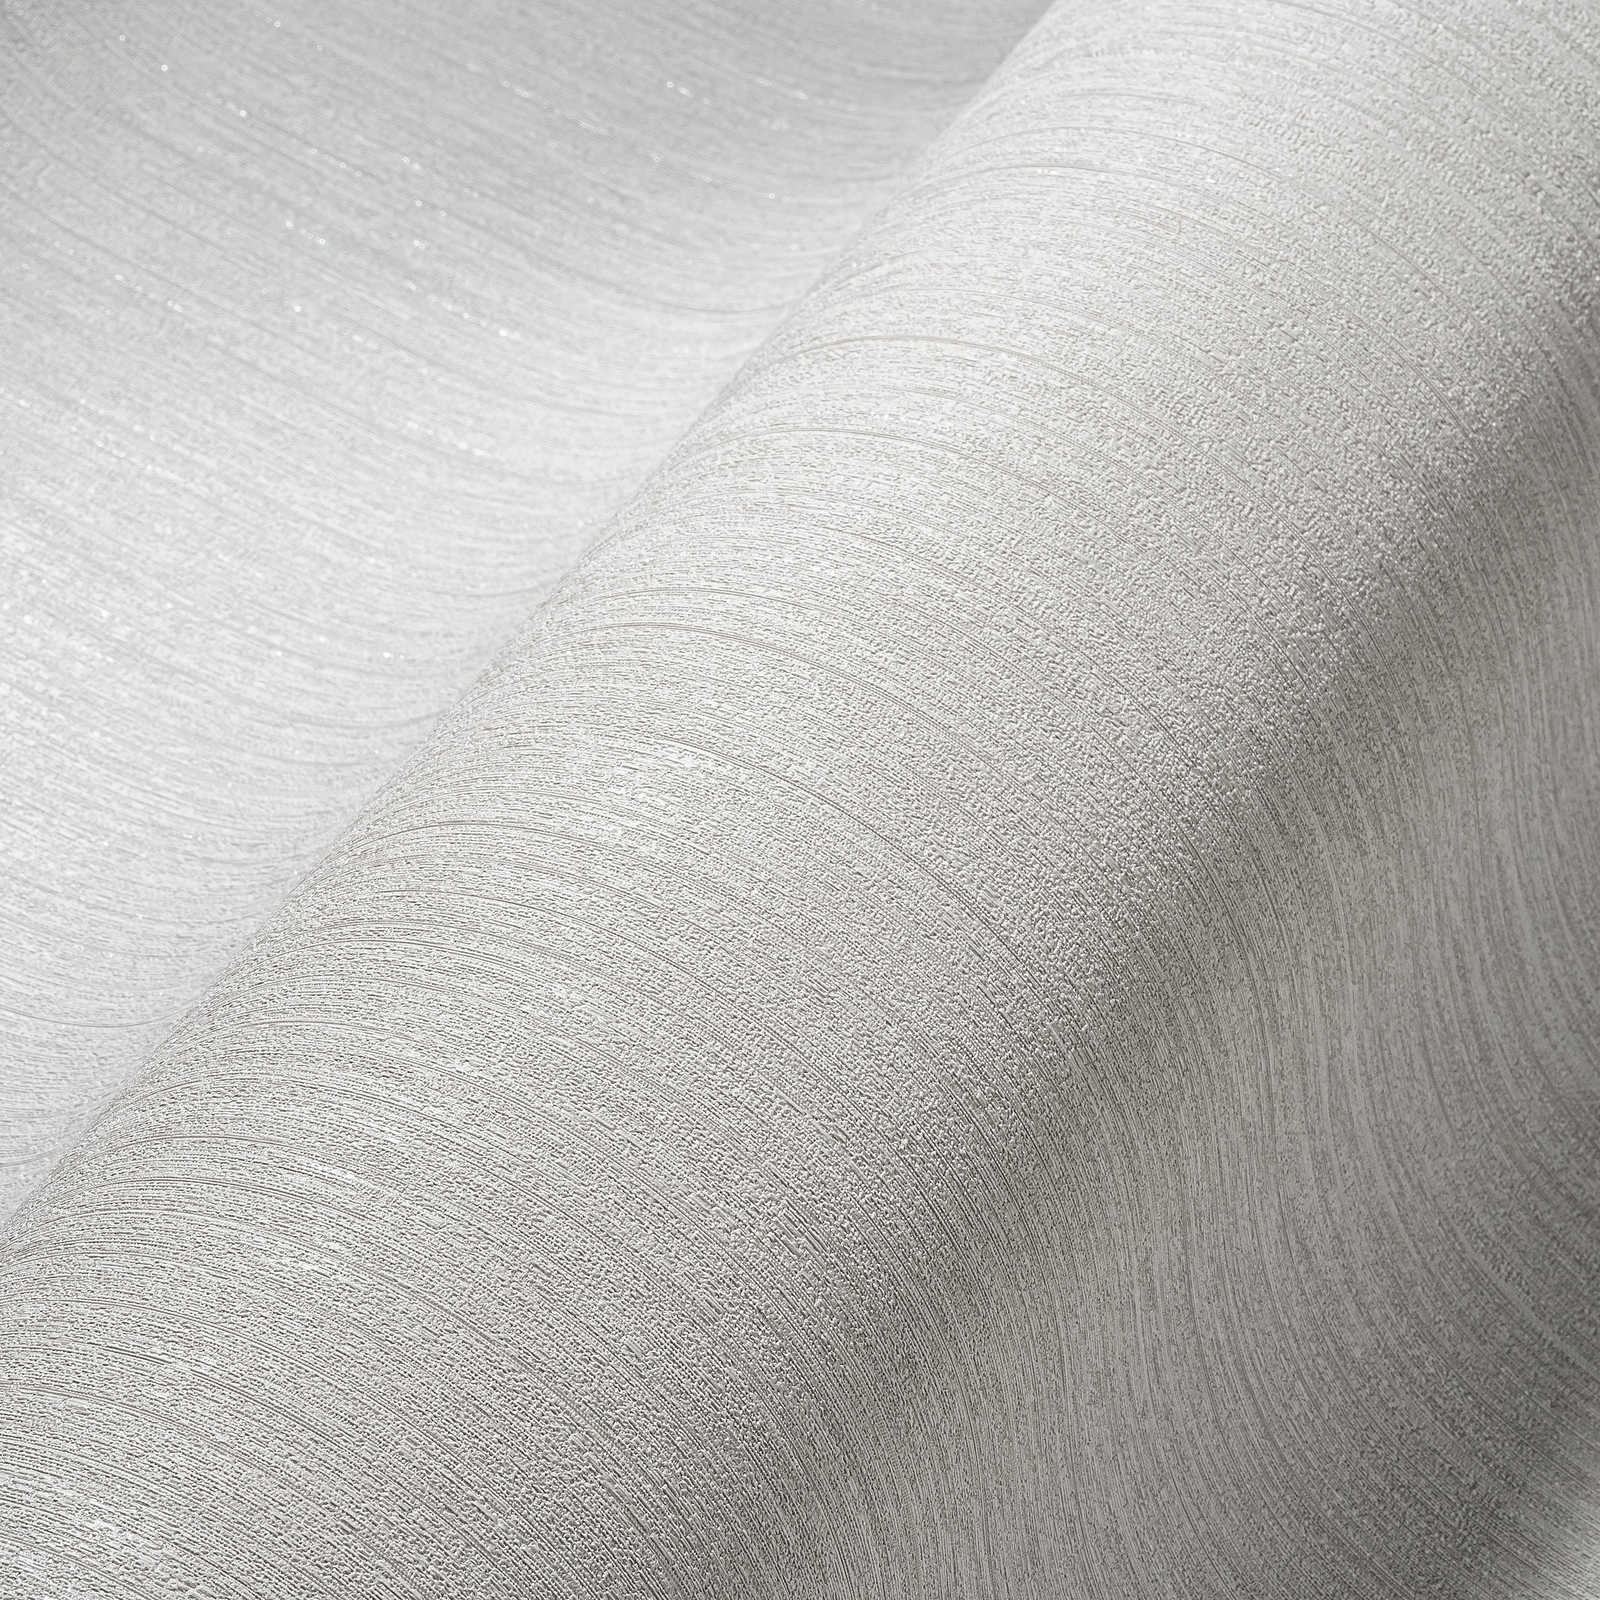             Papier peint intissé gris clair avec motif sturkut, uni & satiné
        